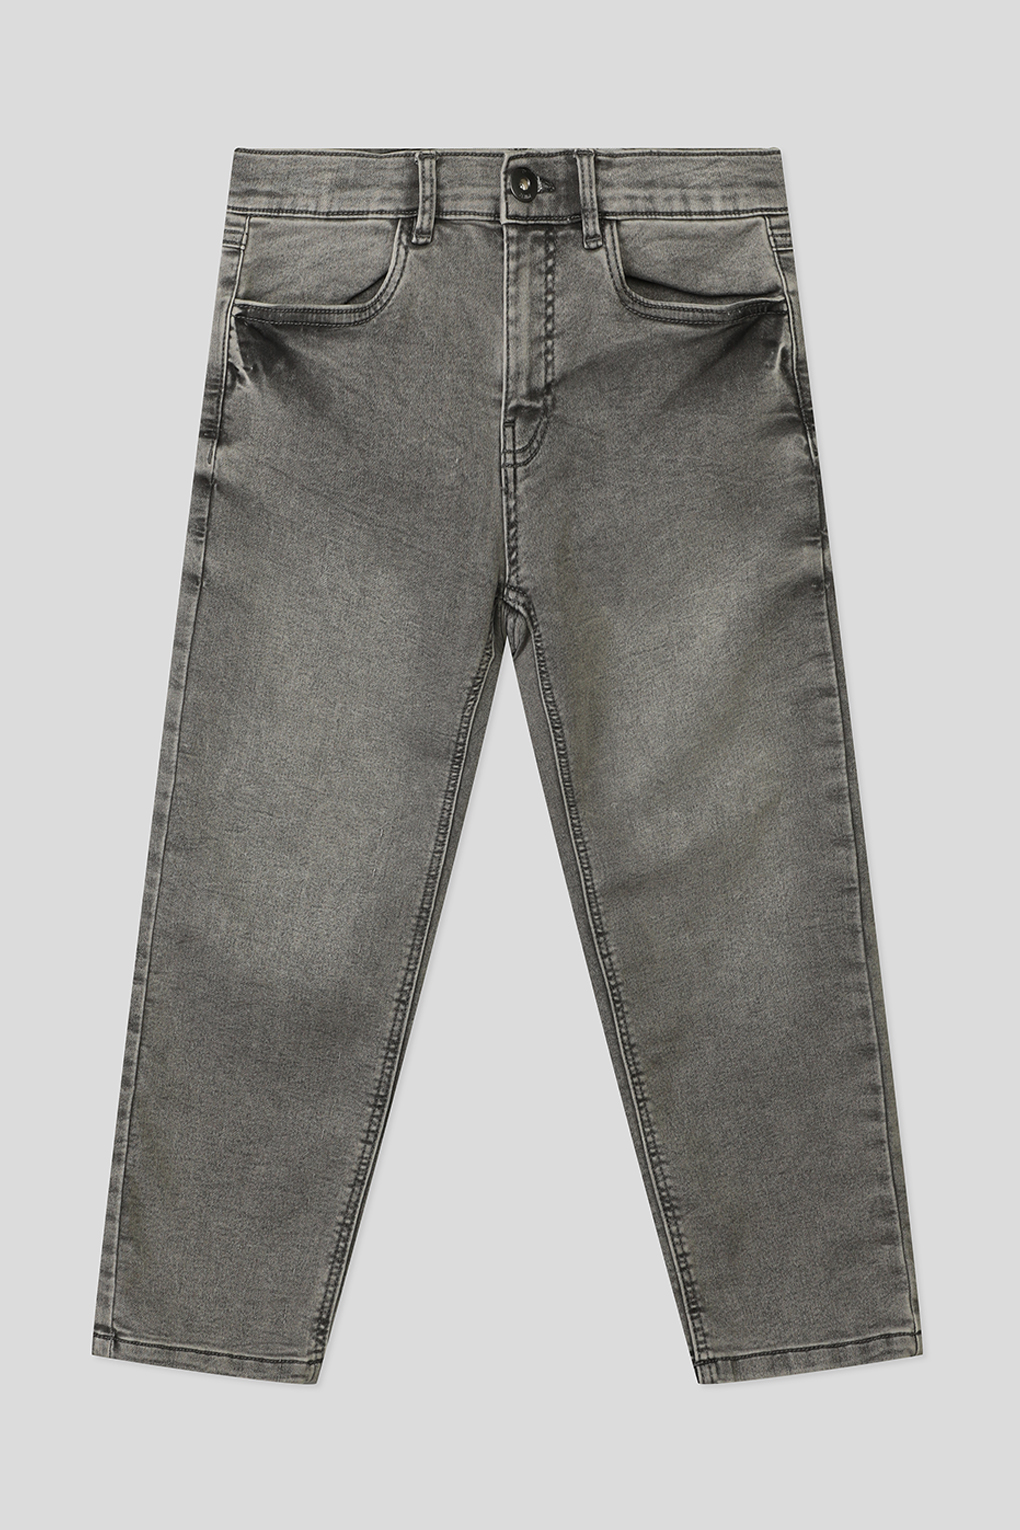 джинсы Reporter Young 231-0110B-45-001-1- для мальчиков, цвет Серый р.146